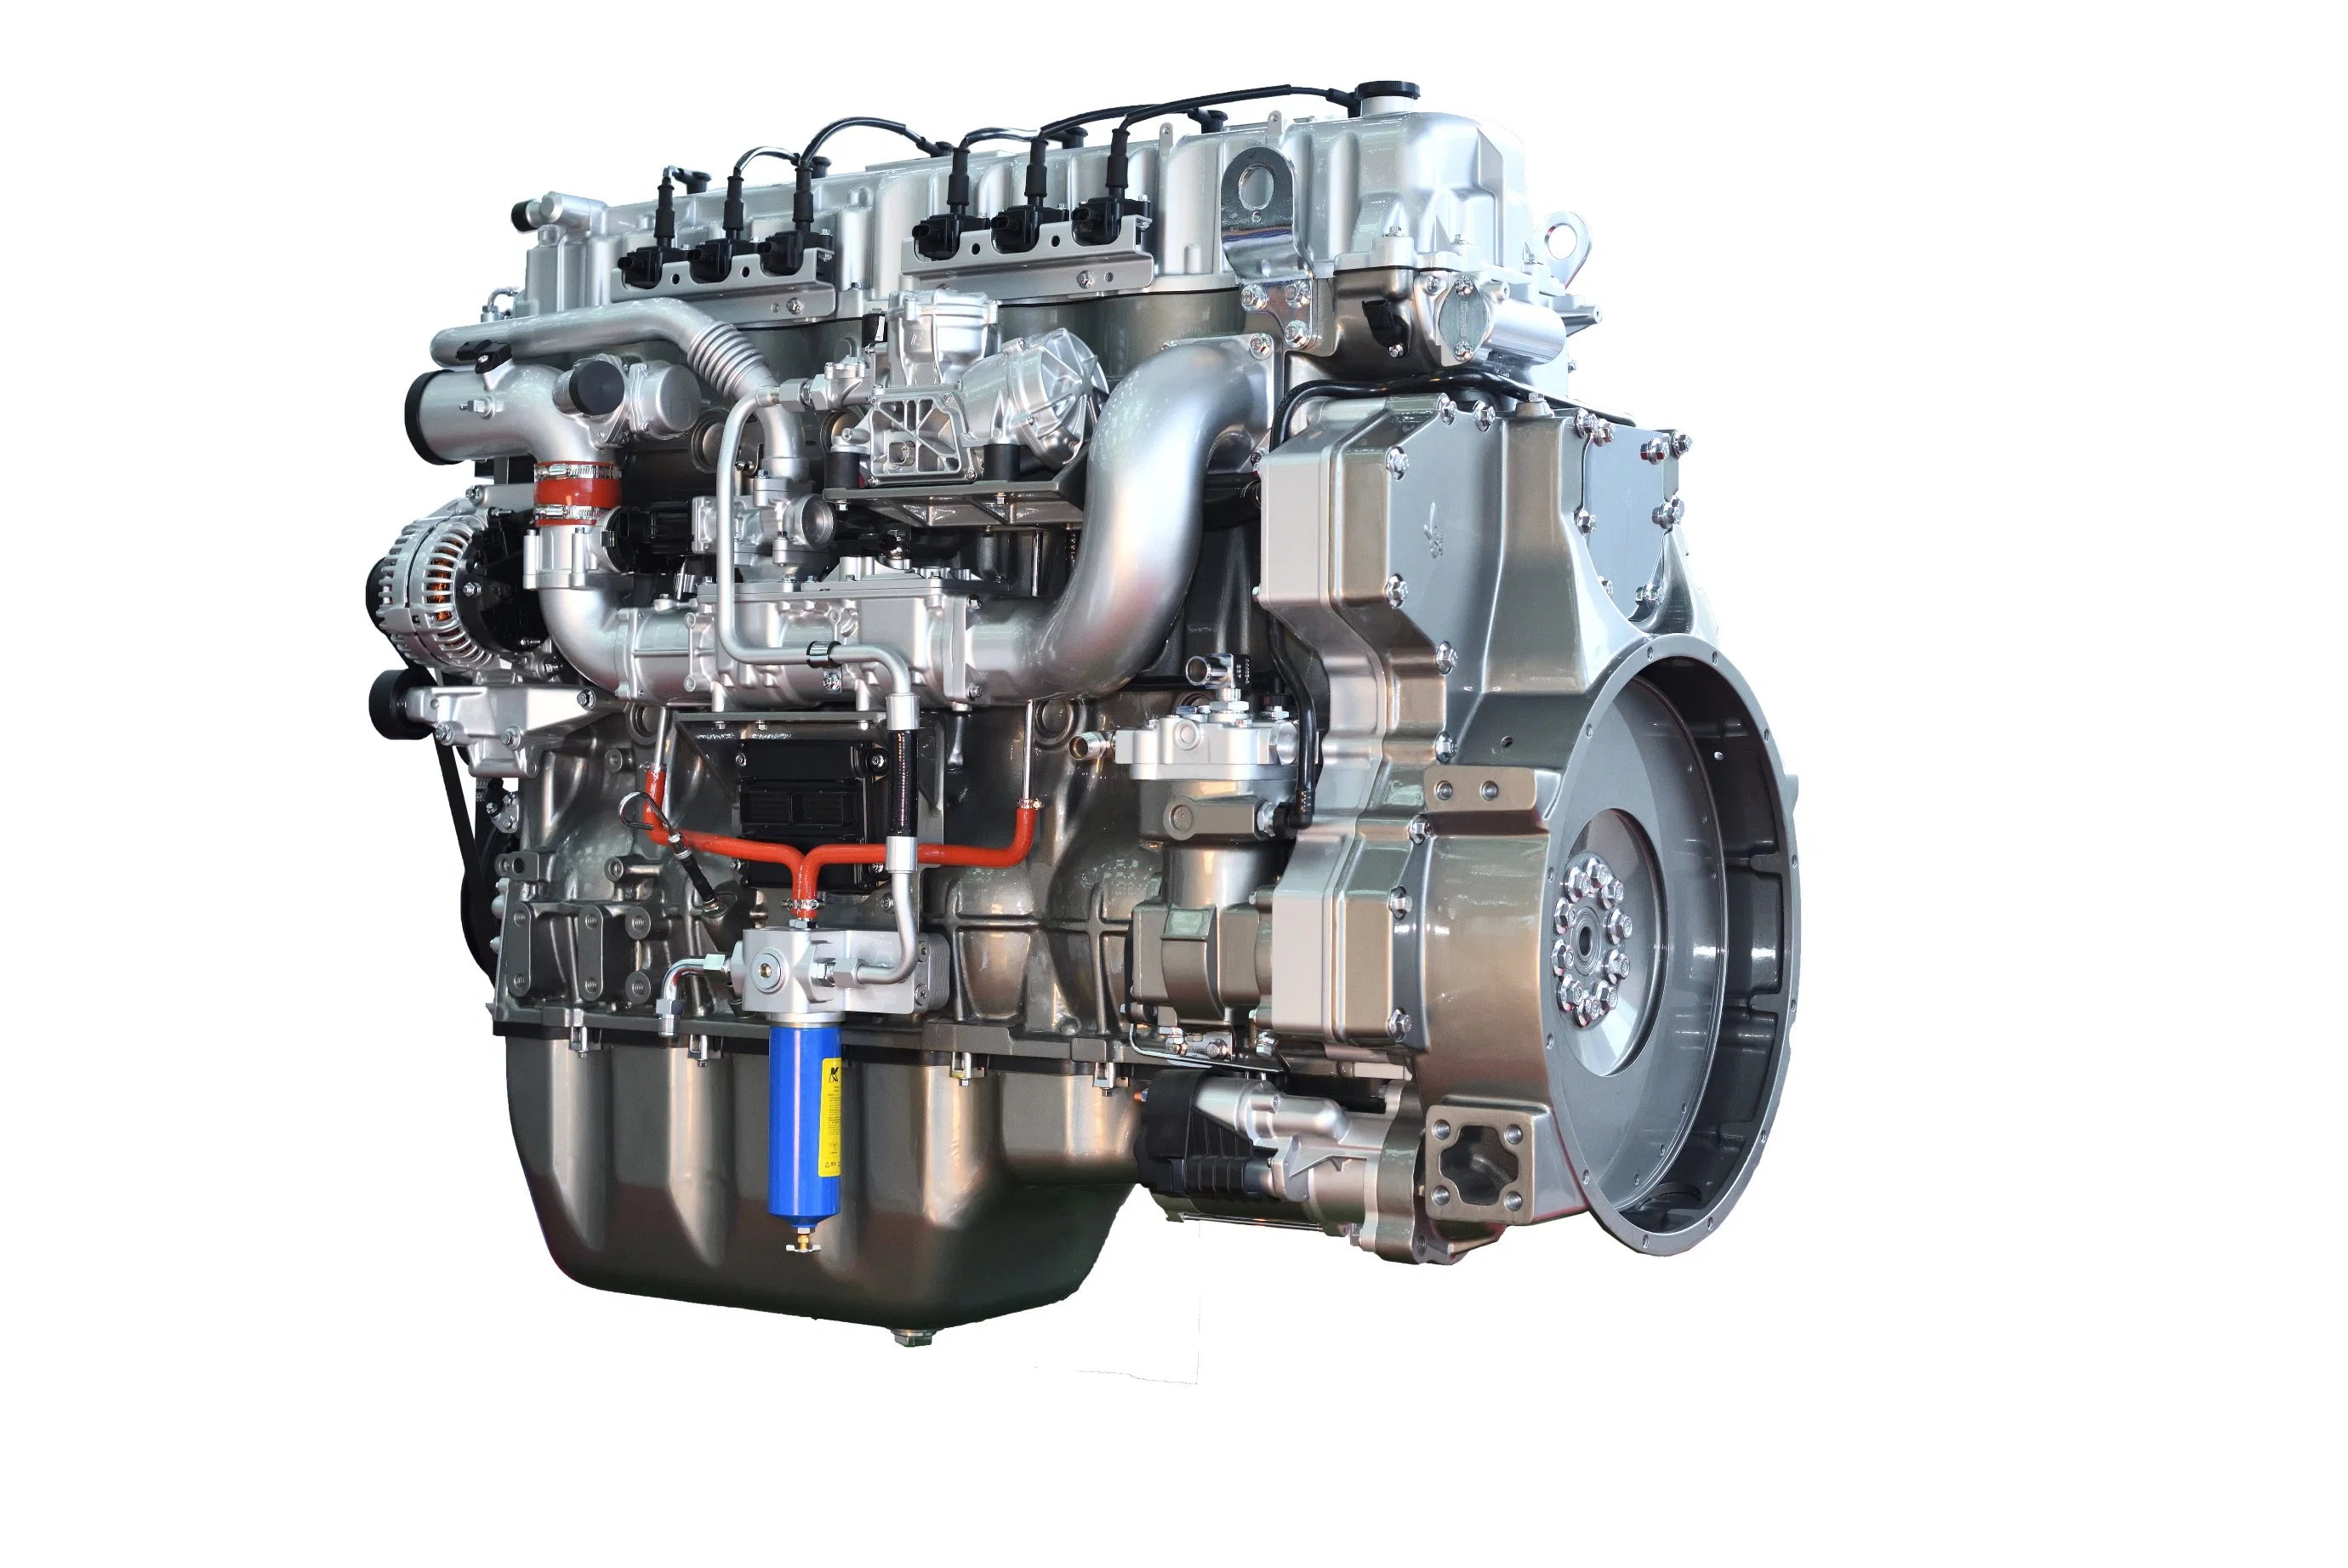 Motor Diesel de alto desempenho Stabel Yuchai 6K13 Euro 5 com elevada potência, elevada fiabilidade, baixo consumo de combustível, potência suficiente